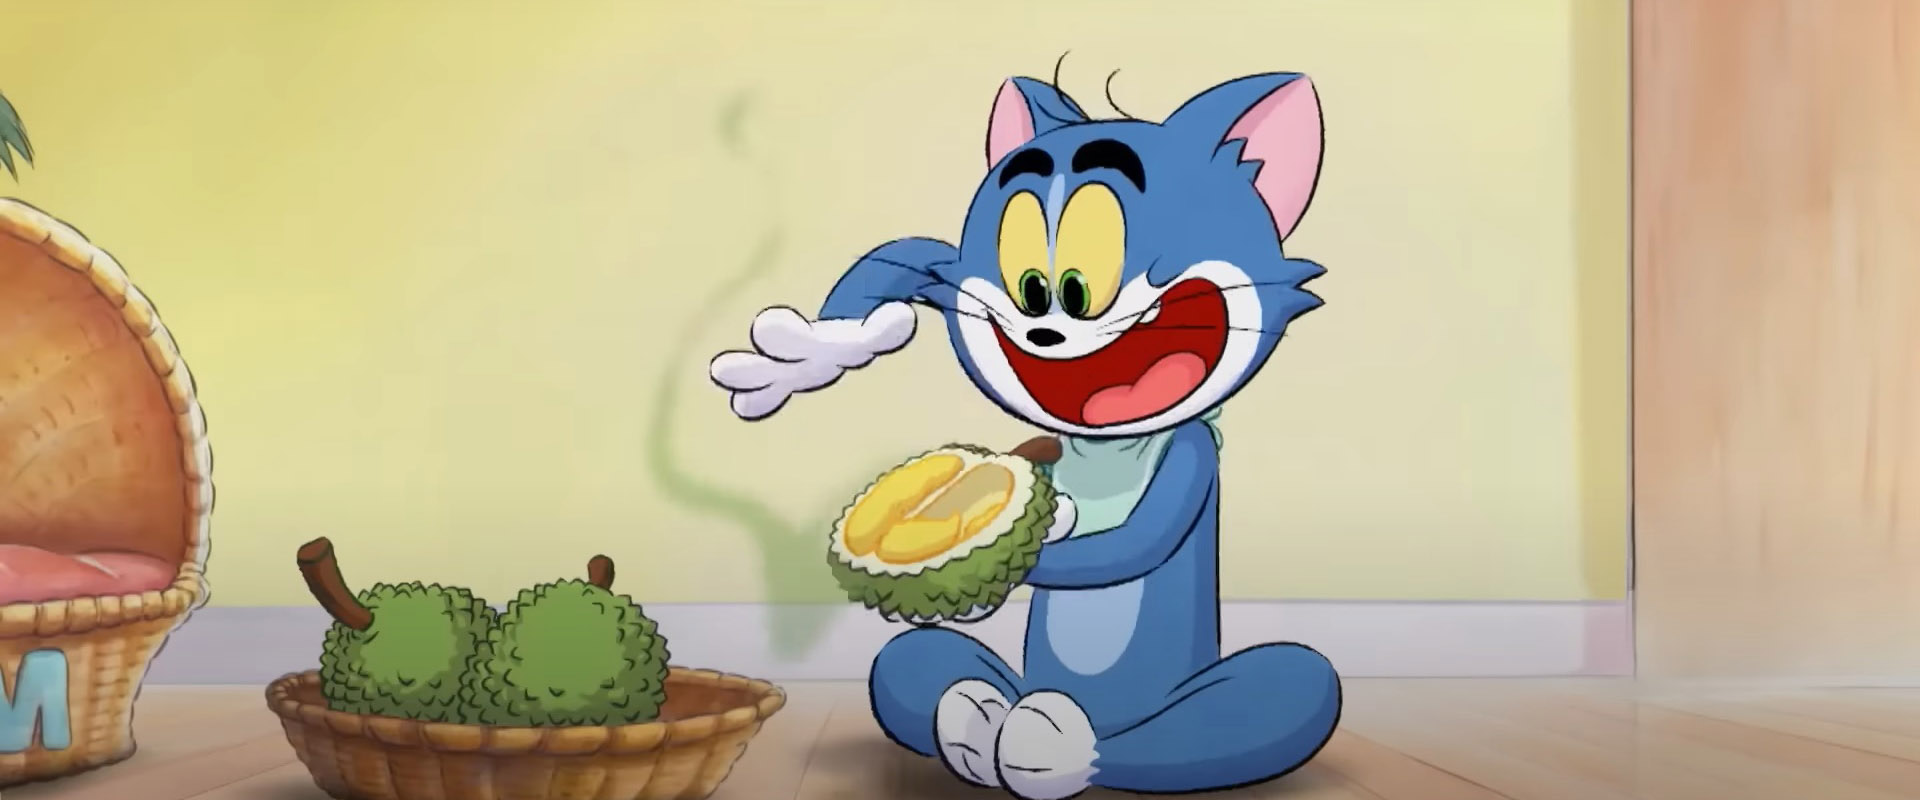 Episodios completos (1-4) de Tom y Jerry en Singapur |  @WBKidsLatino